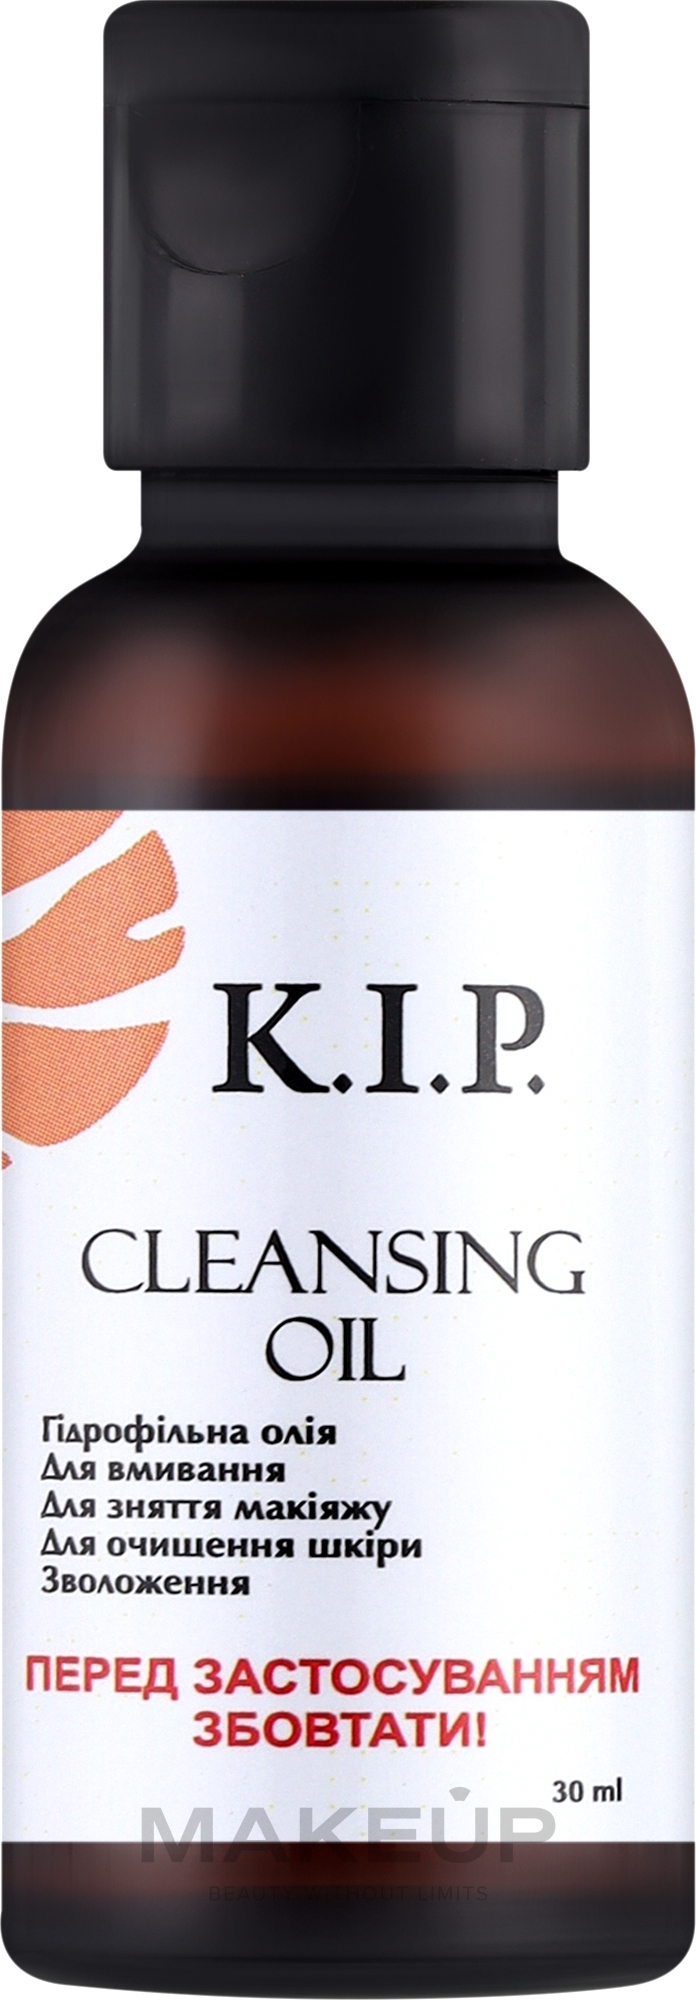 Гидрофильное масло для умывания - K.I.P. Cleansing Oil (пробник) — фото 30ml